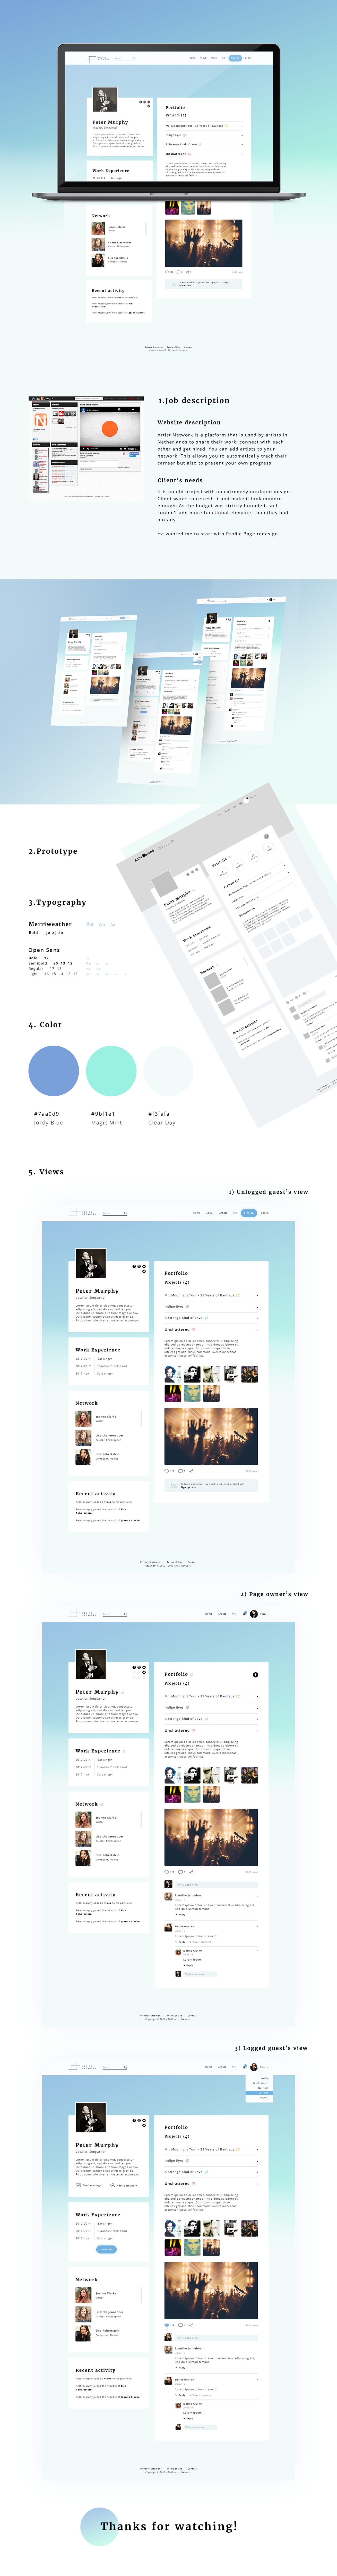 Profile Page screen design idea #35: Profile Page for Dutch Social Network